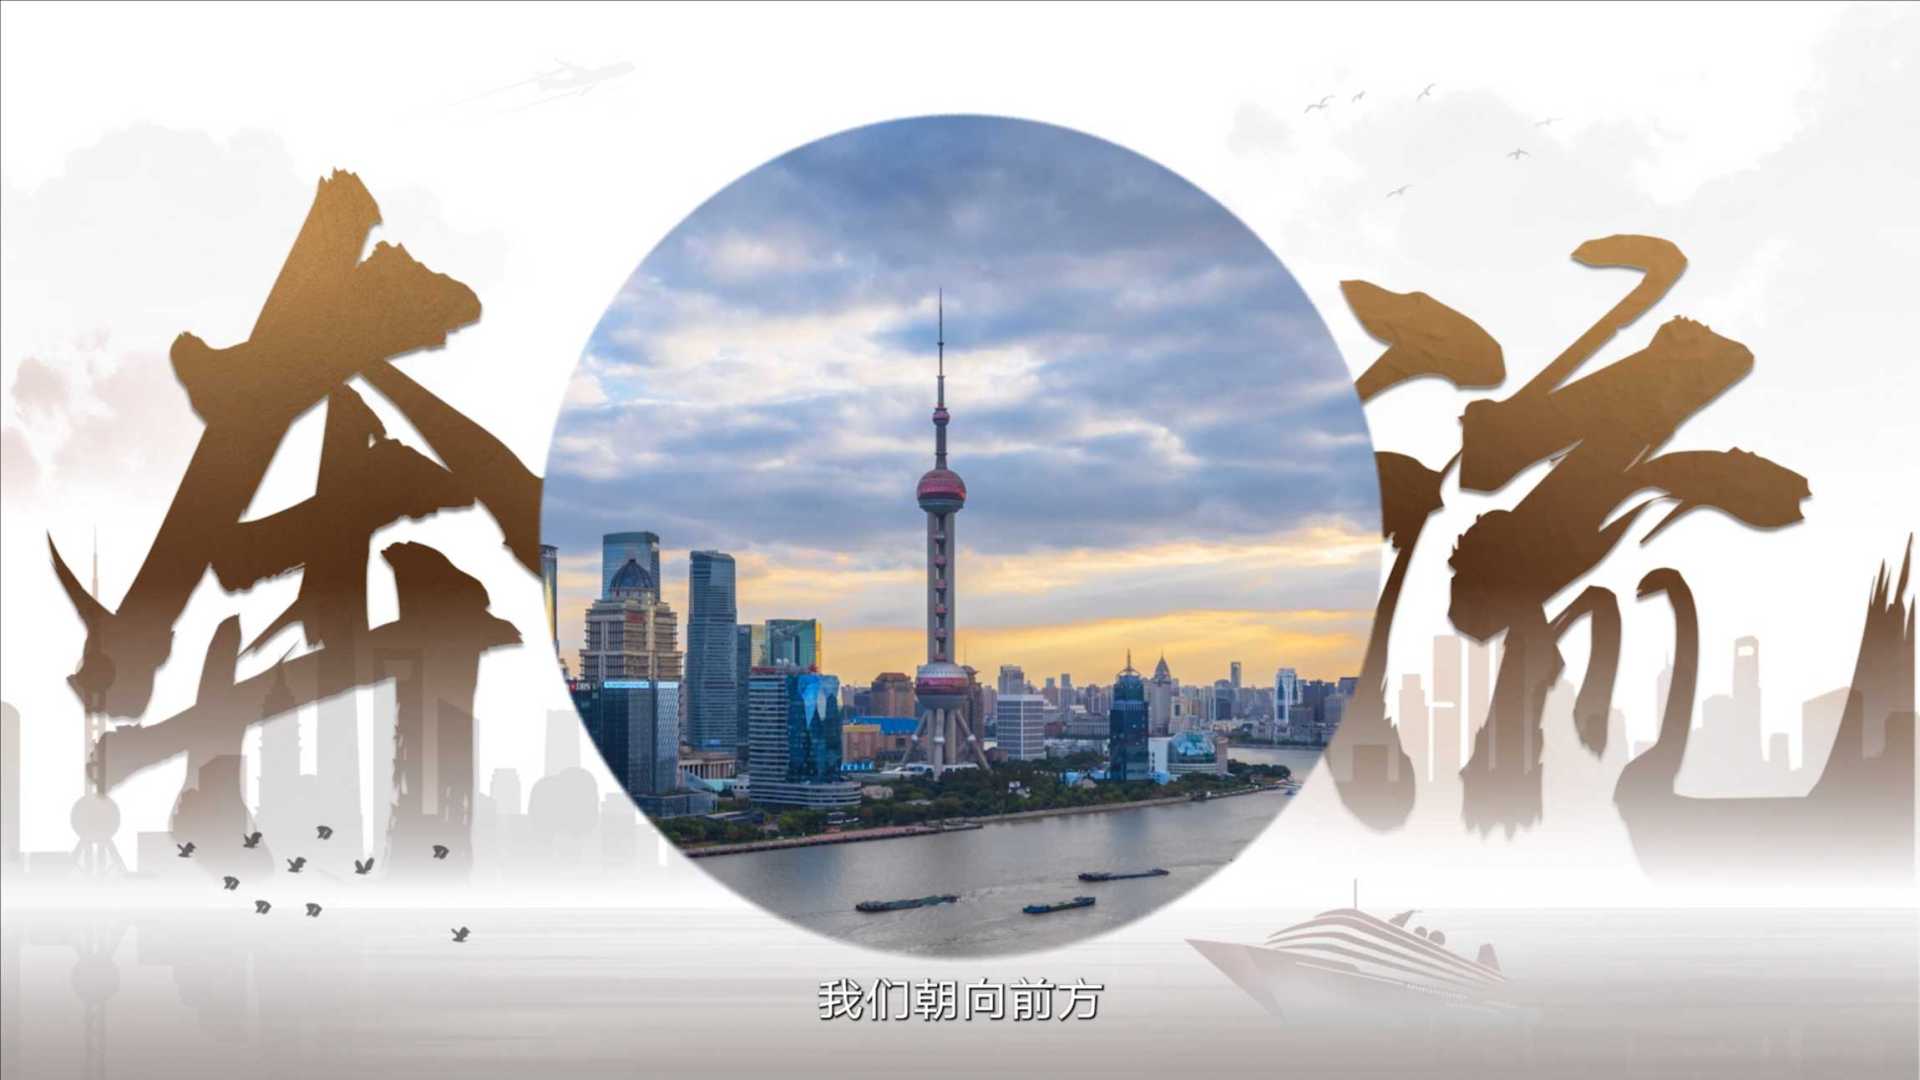 《浦江奔流·东方潮阔》北京银行上海分行16周年宣传片